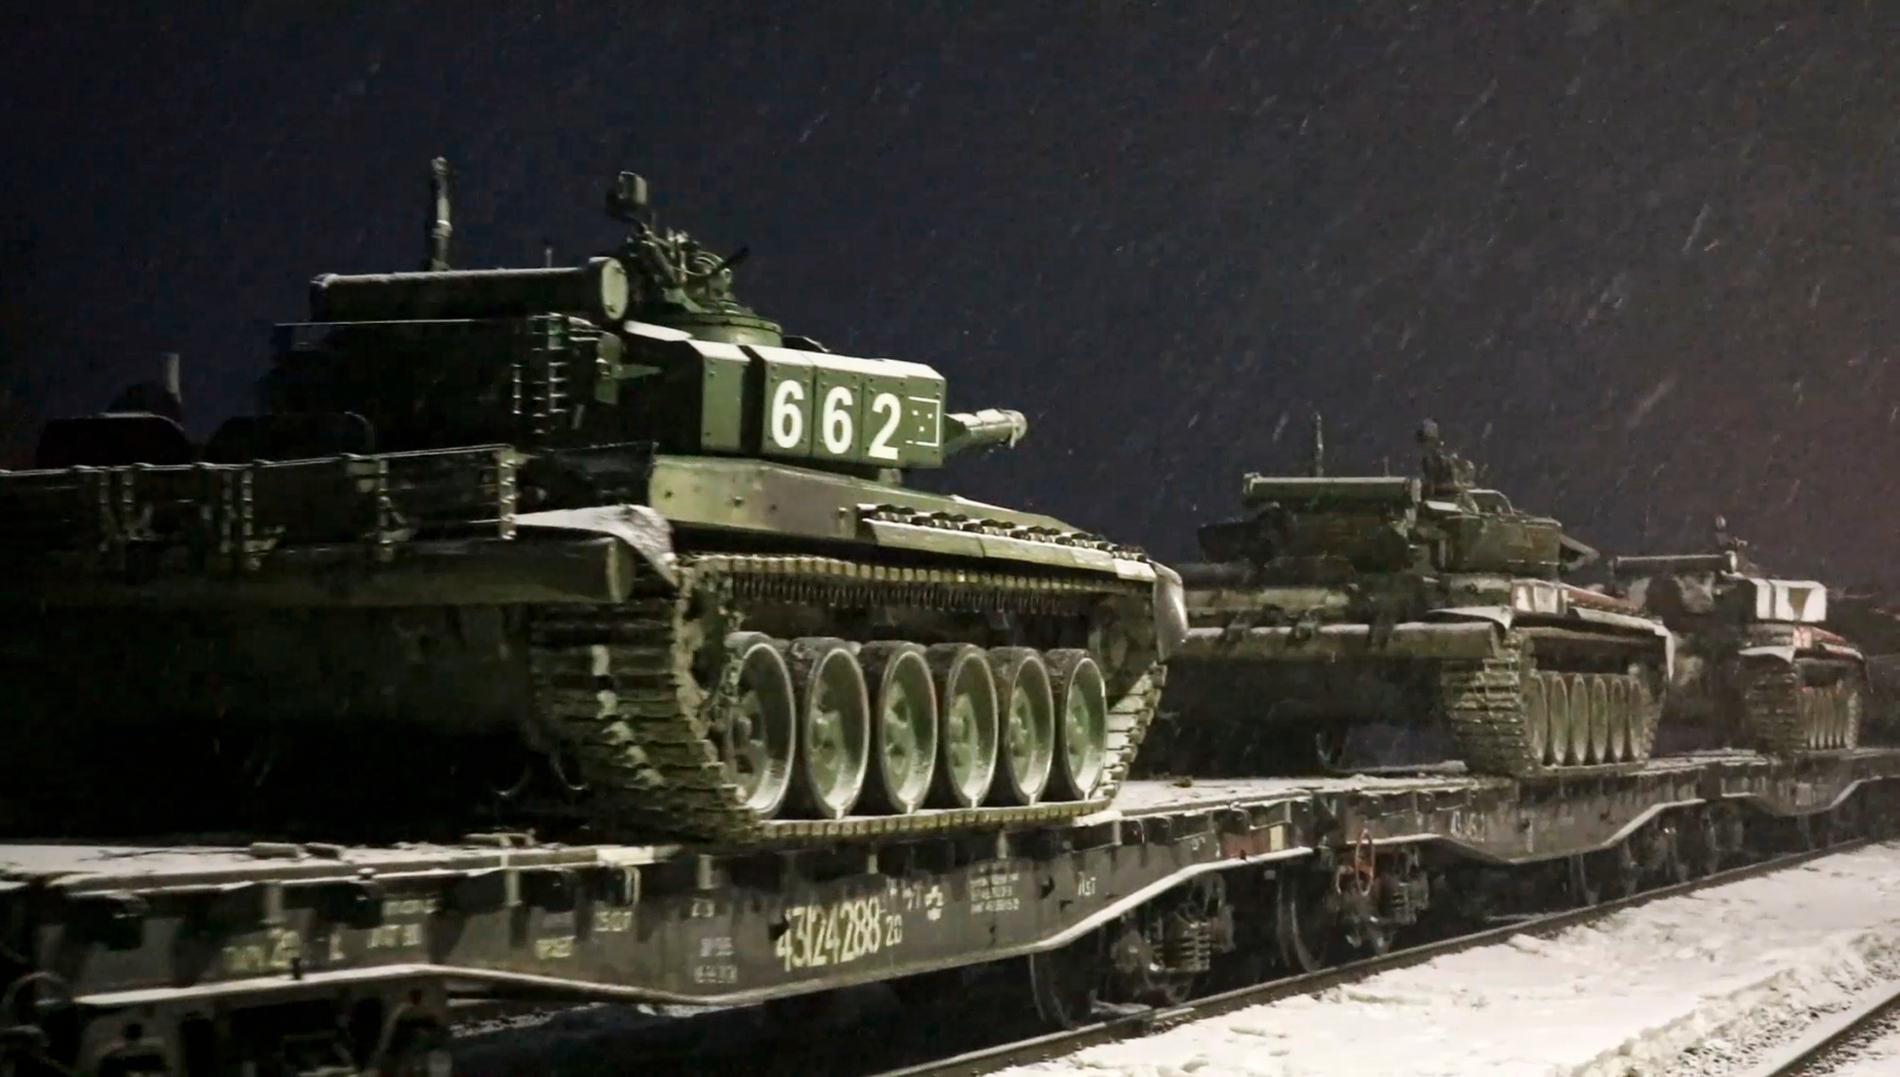 Ryska arméstridsvagnar lastas vid järnvägsplattformar under fredagen. Den ryska militären hävdar att trupper dragits tillbaka efter övningar i regioner nära Ukraina – men USA och dess allierade ifrågasätter de uppgifterna. De menar att ryssarna istället förstärkt sina trupper vid ukrainska gränserna.